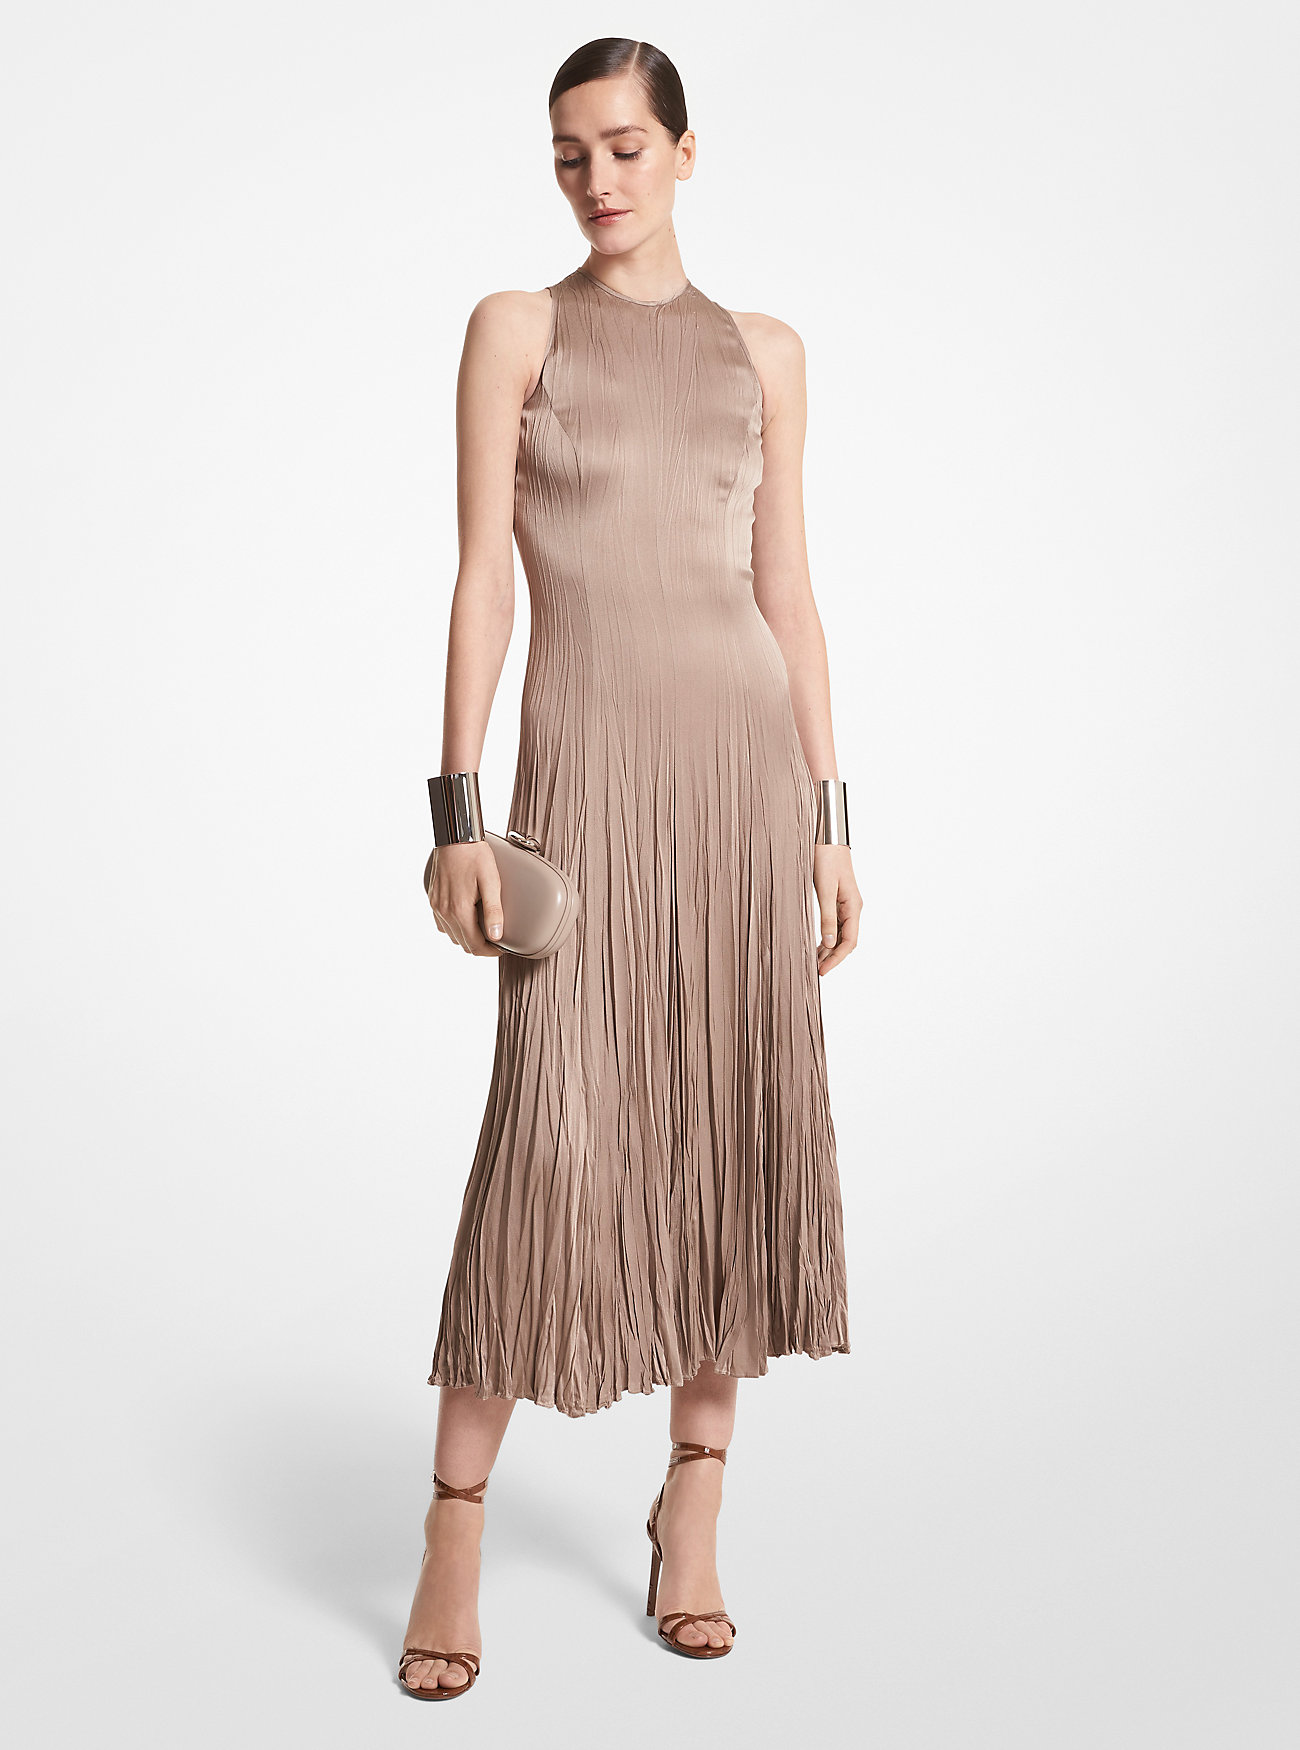 Текстурированное плиссированное платье Charmeuse Michael Kors, коричневый